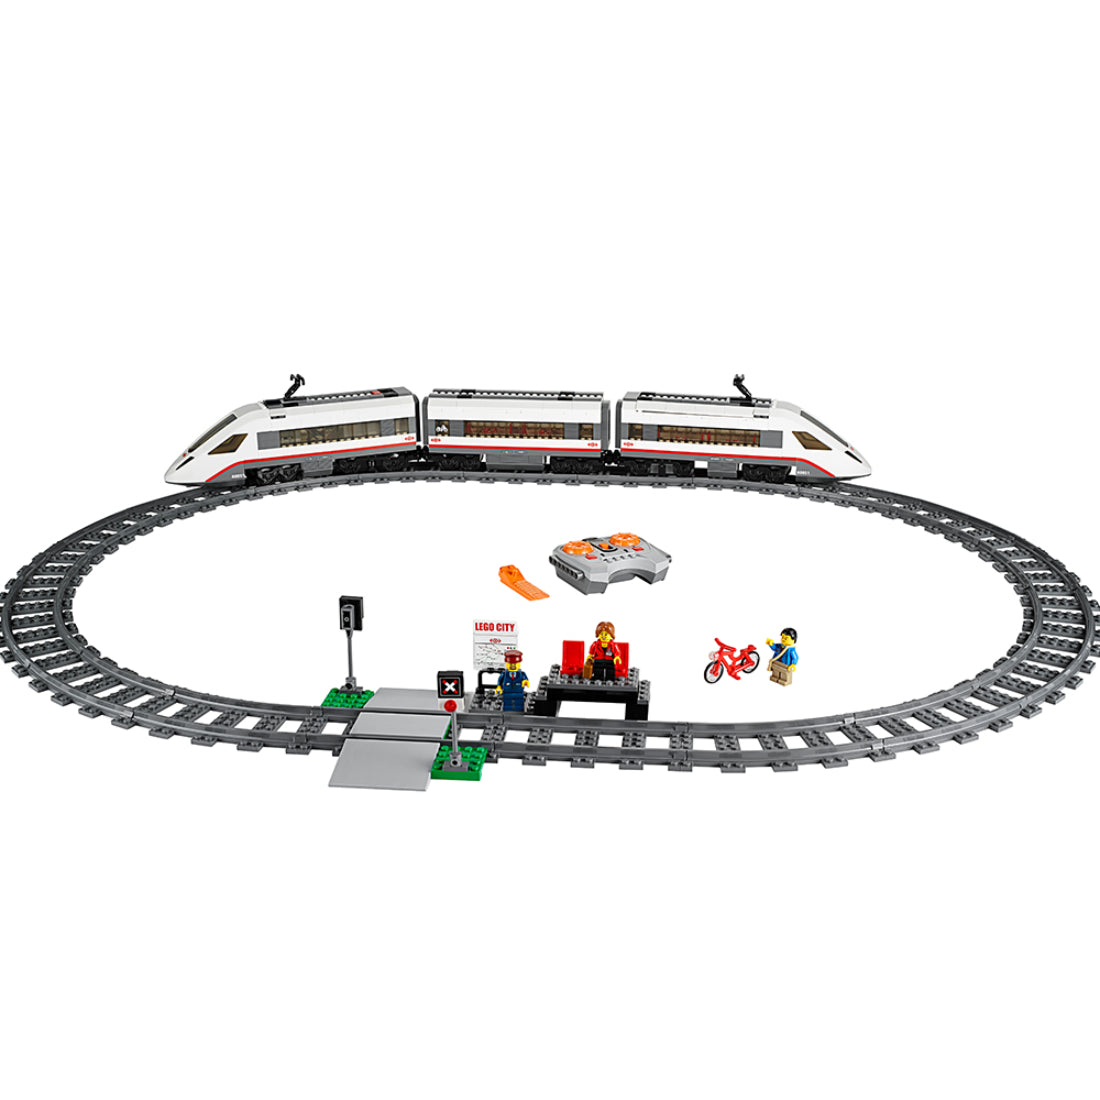 LEGO® City Tren de Pasajeros de Alta Velocidad (60051)